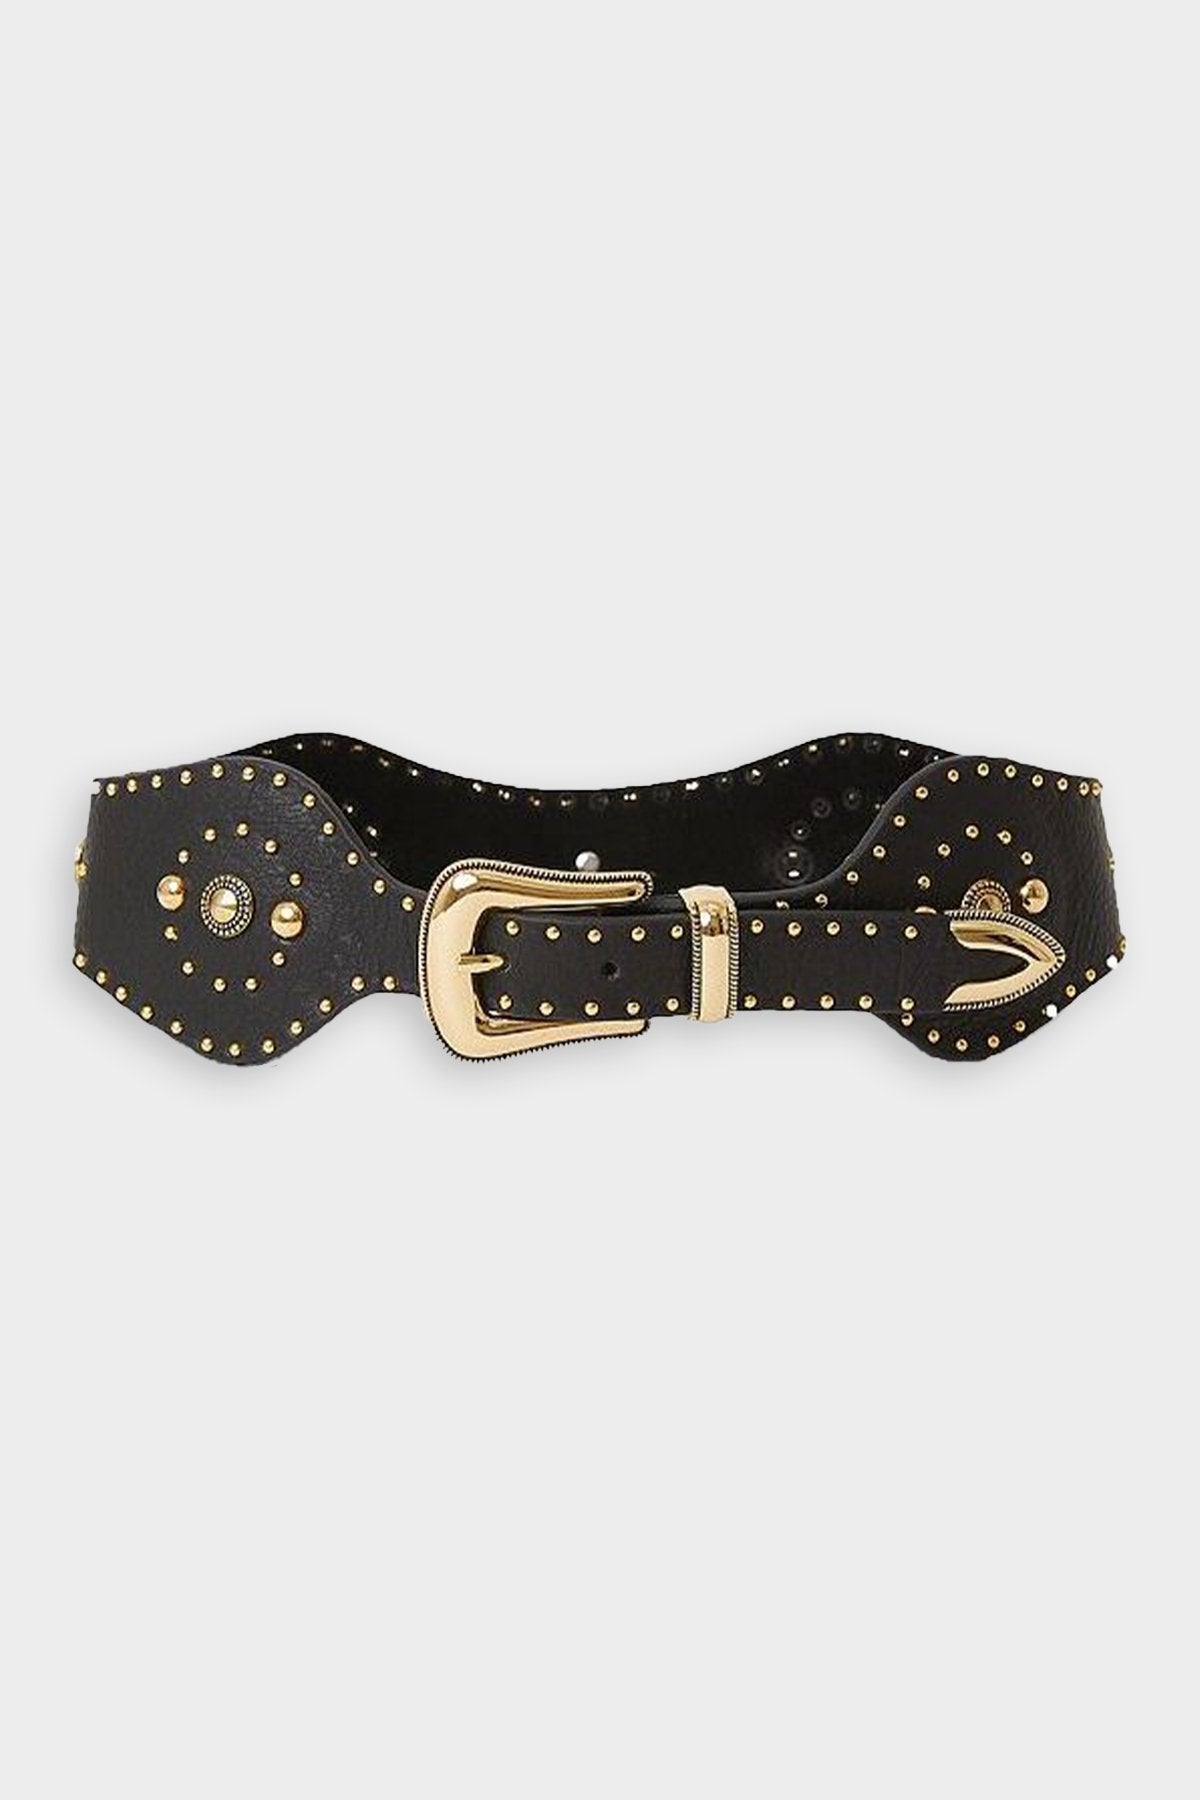 Colton Leather Belt in Black Gold - shop-olivia.com